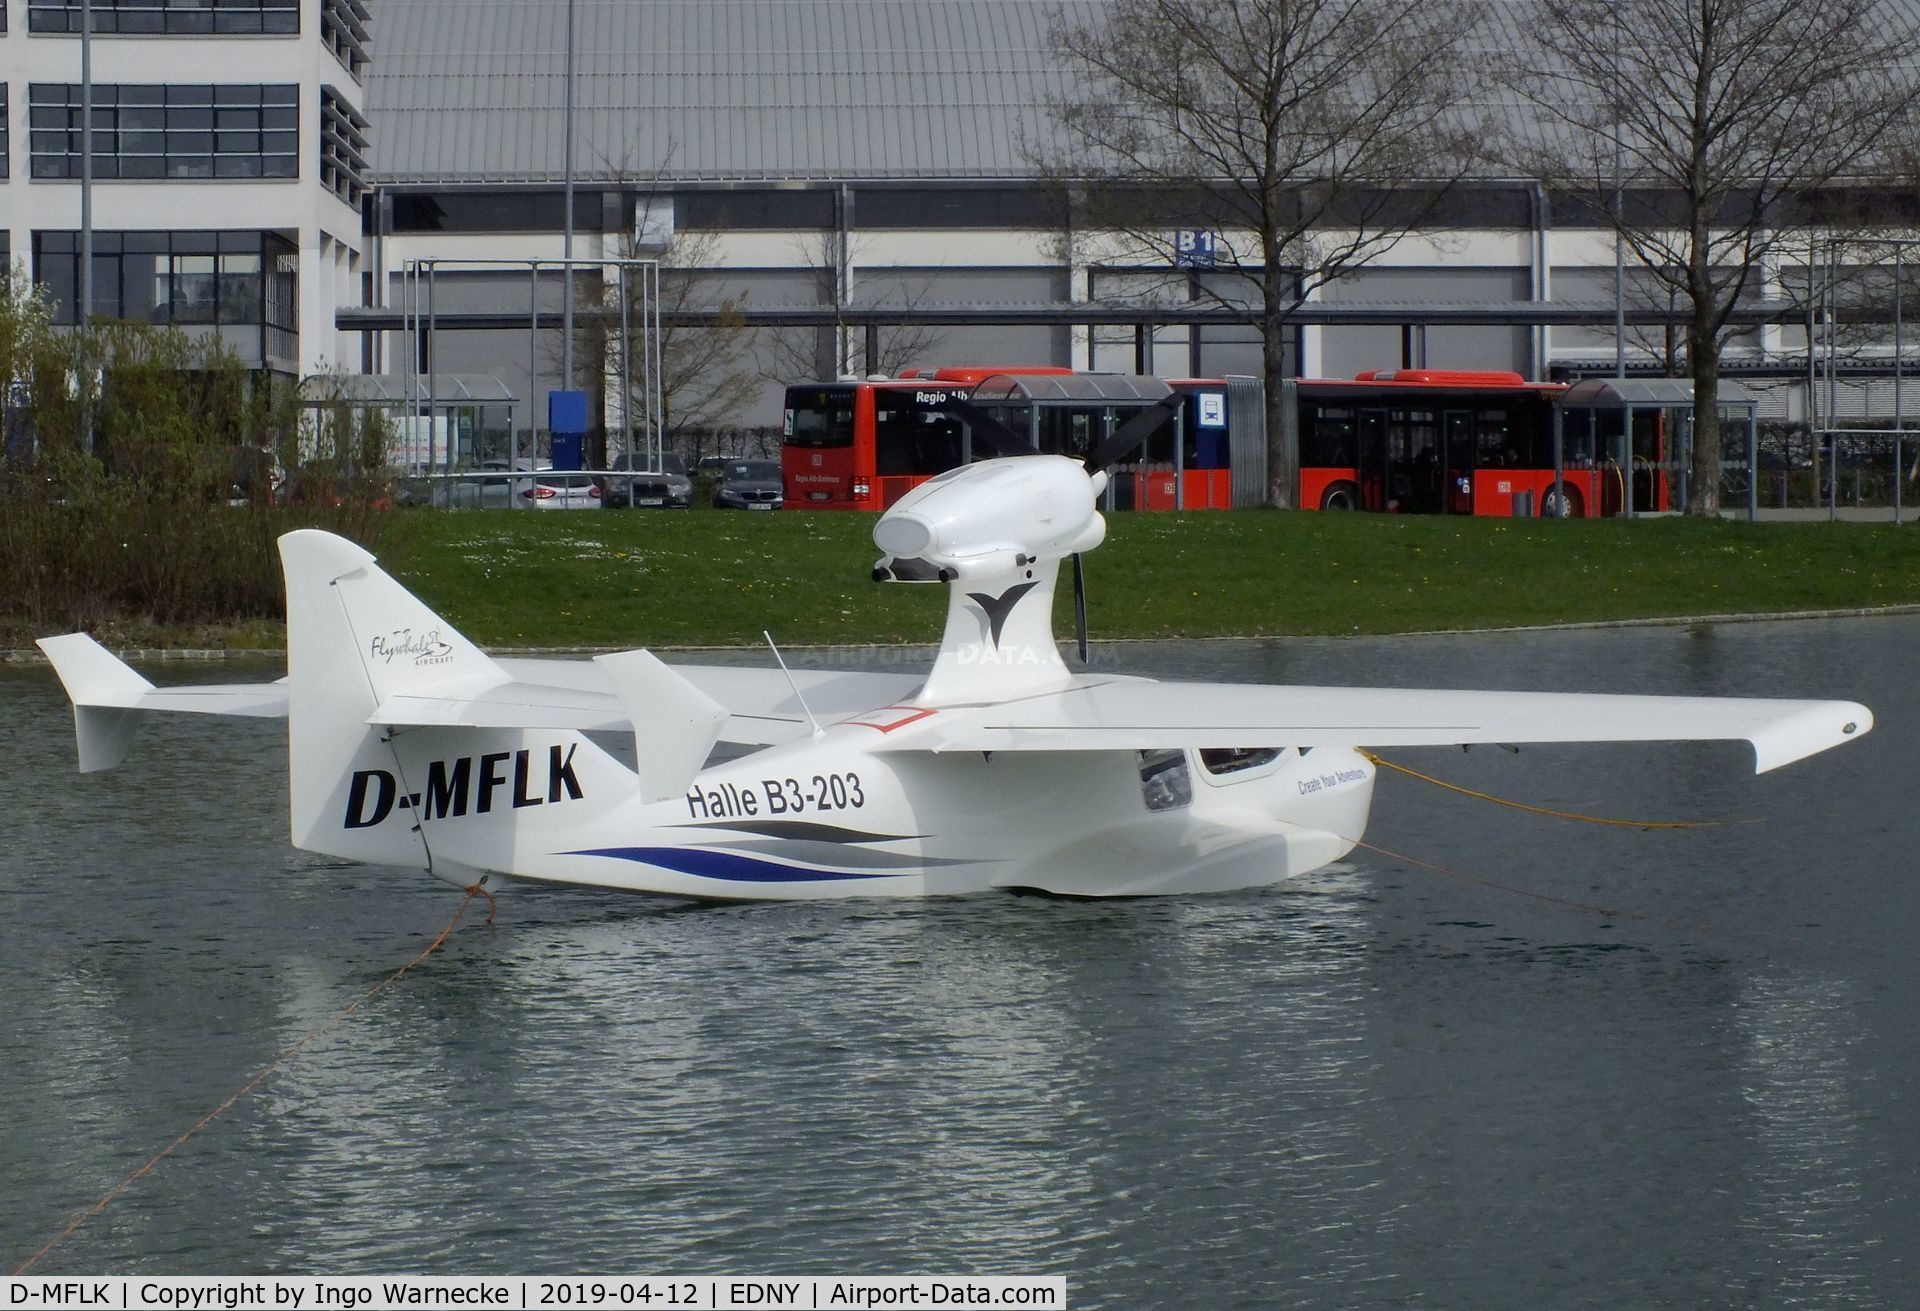 D-MFLK, Flywhale  Aircraft Adventure IS Sport C/N 6, Flywhale Aircraft Adventure iS Sport at the AERO 2019, Friedrichshafen